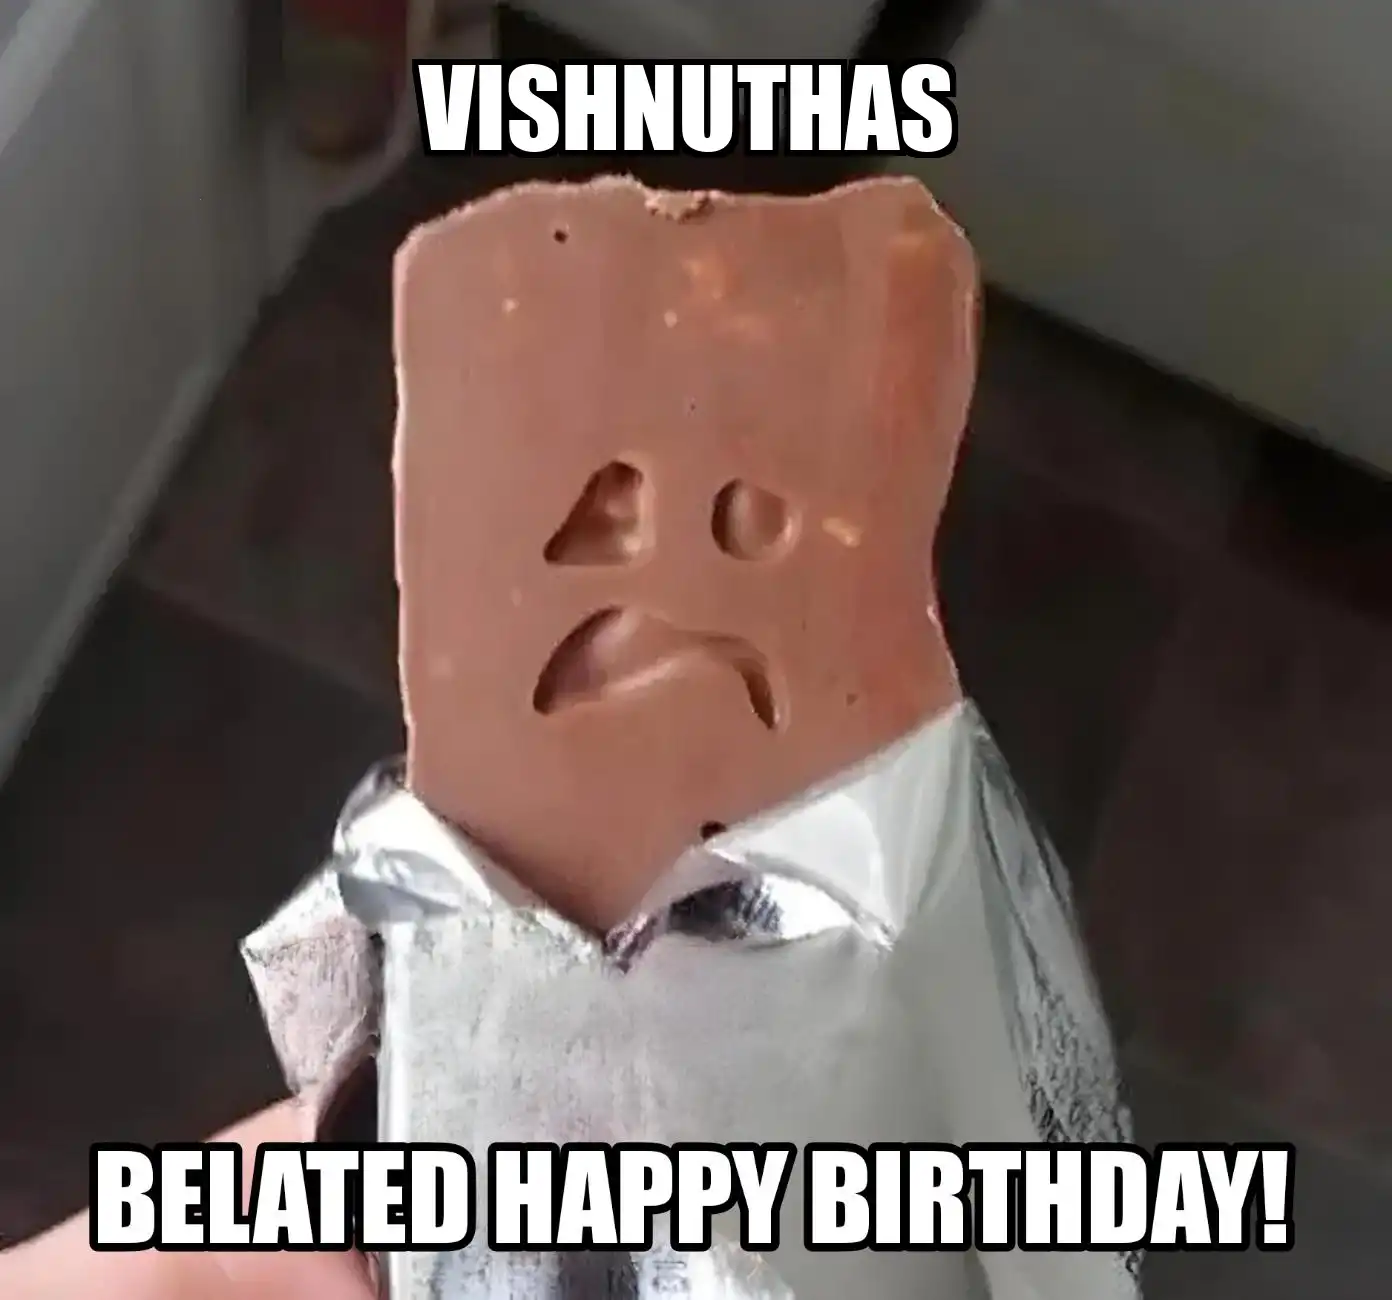 Happy Birthday Vishnuthas Belated Happy Birthday Meme